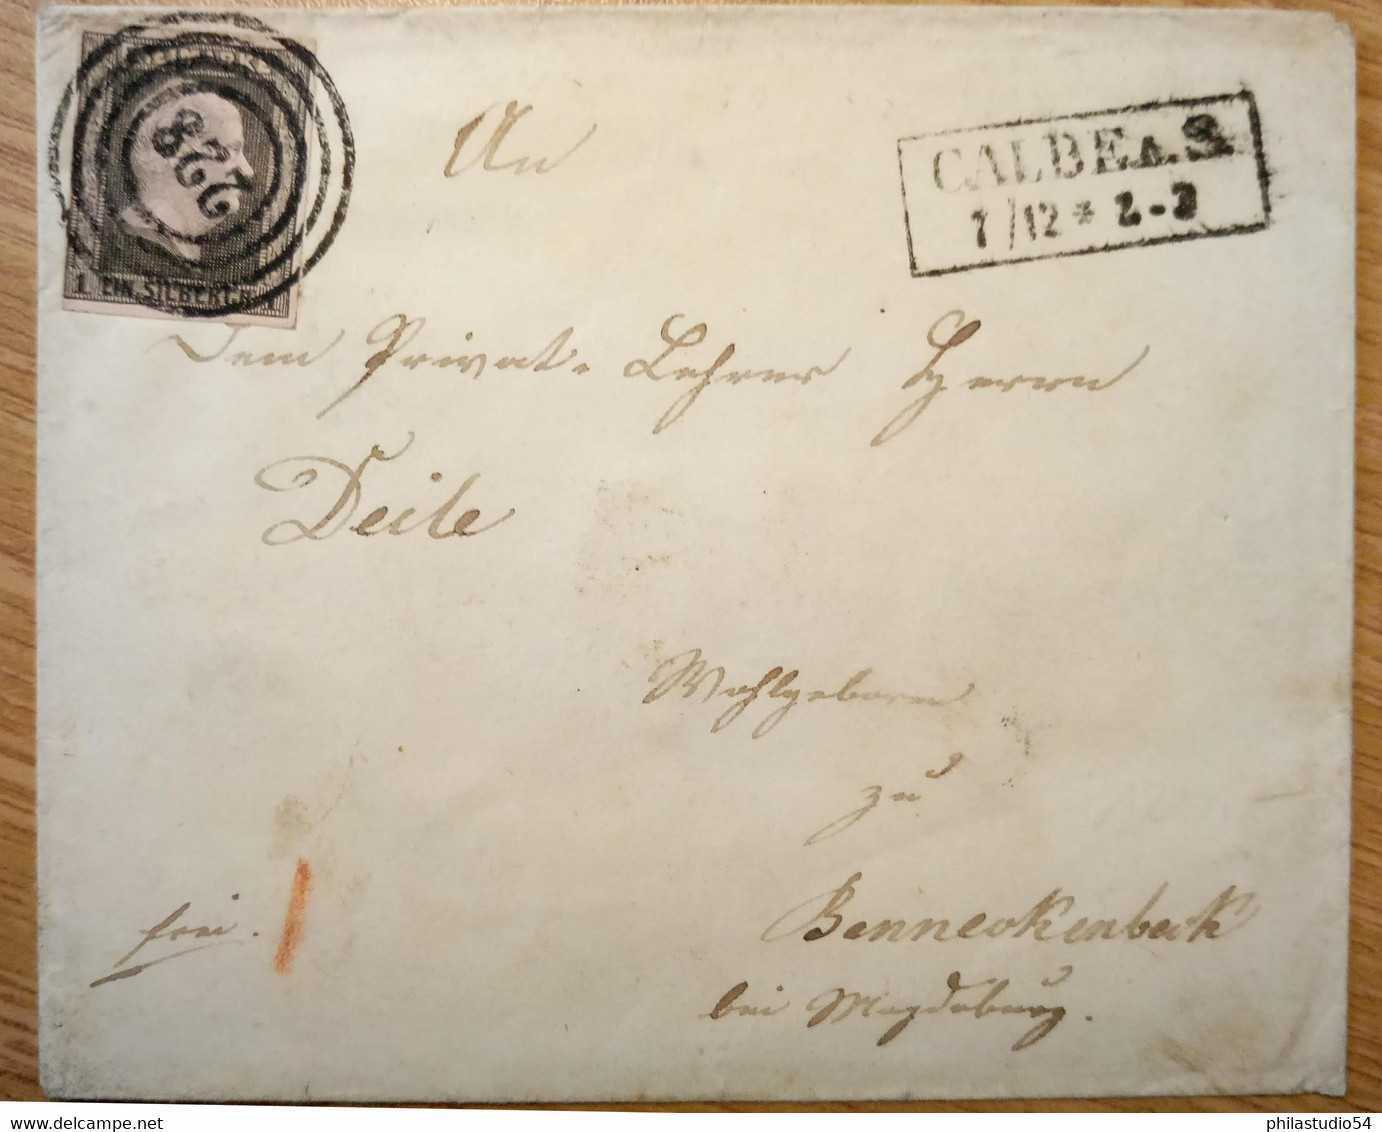 1851, Umschlag Mit 1 Sgr., Klarer Nummernstempel "228" Mit Ra2 "CALBE 1/12" - Covers & Documents